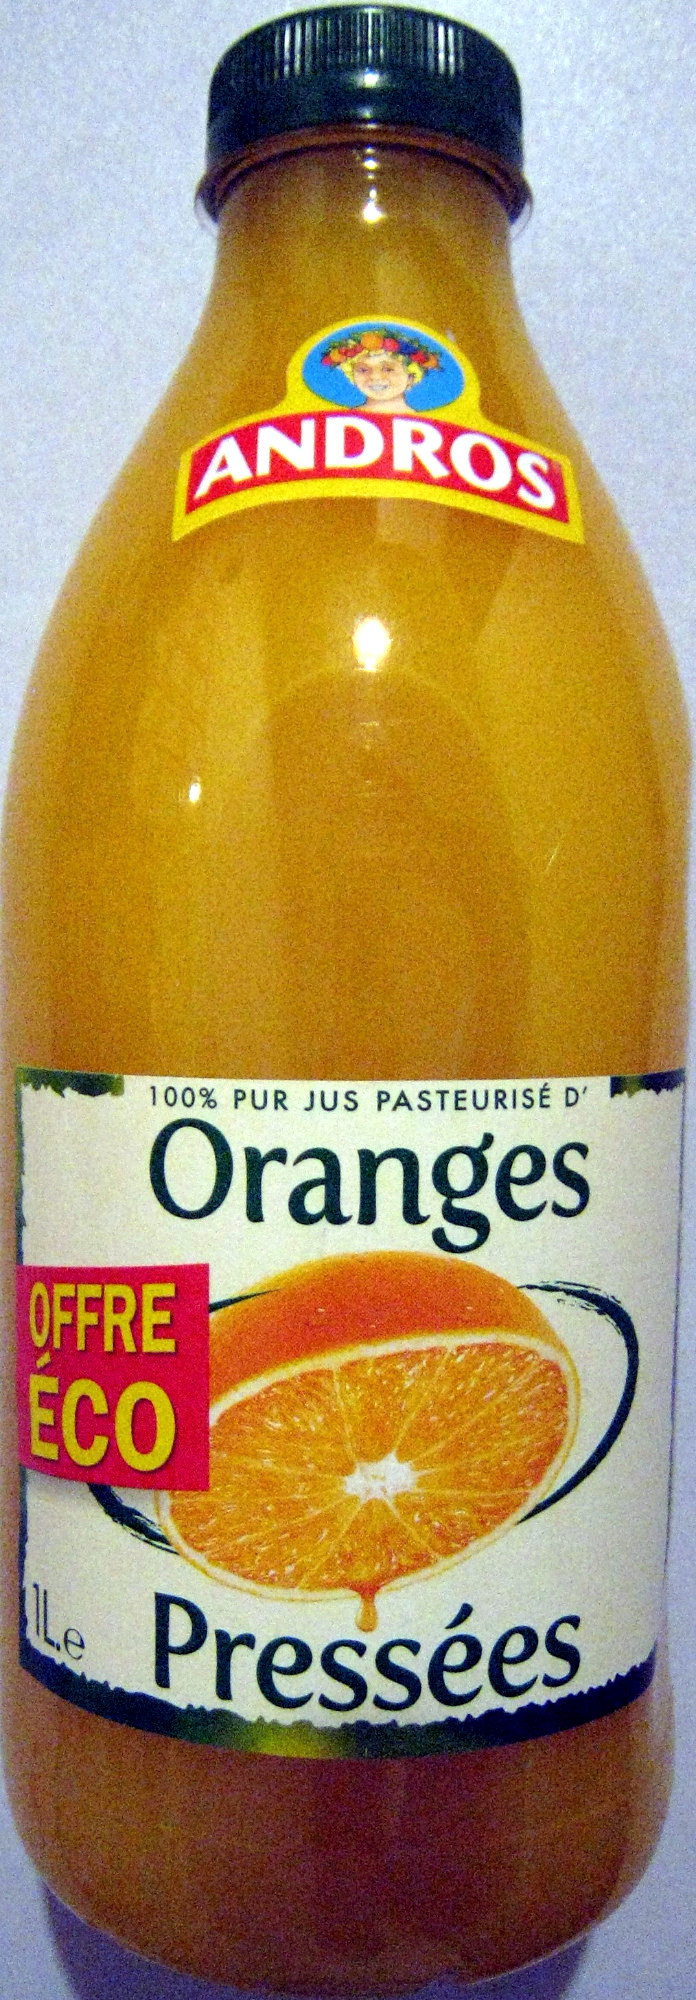 100% pur jus pasteurisé d'Oranges pressées Andros - Product - fr